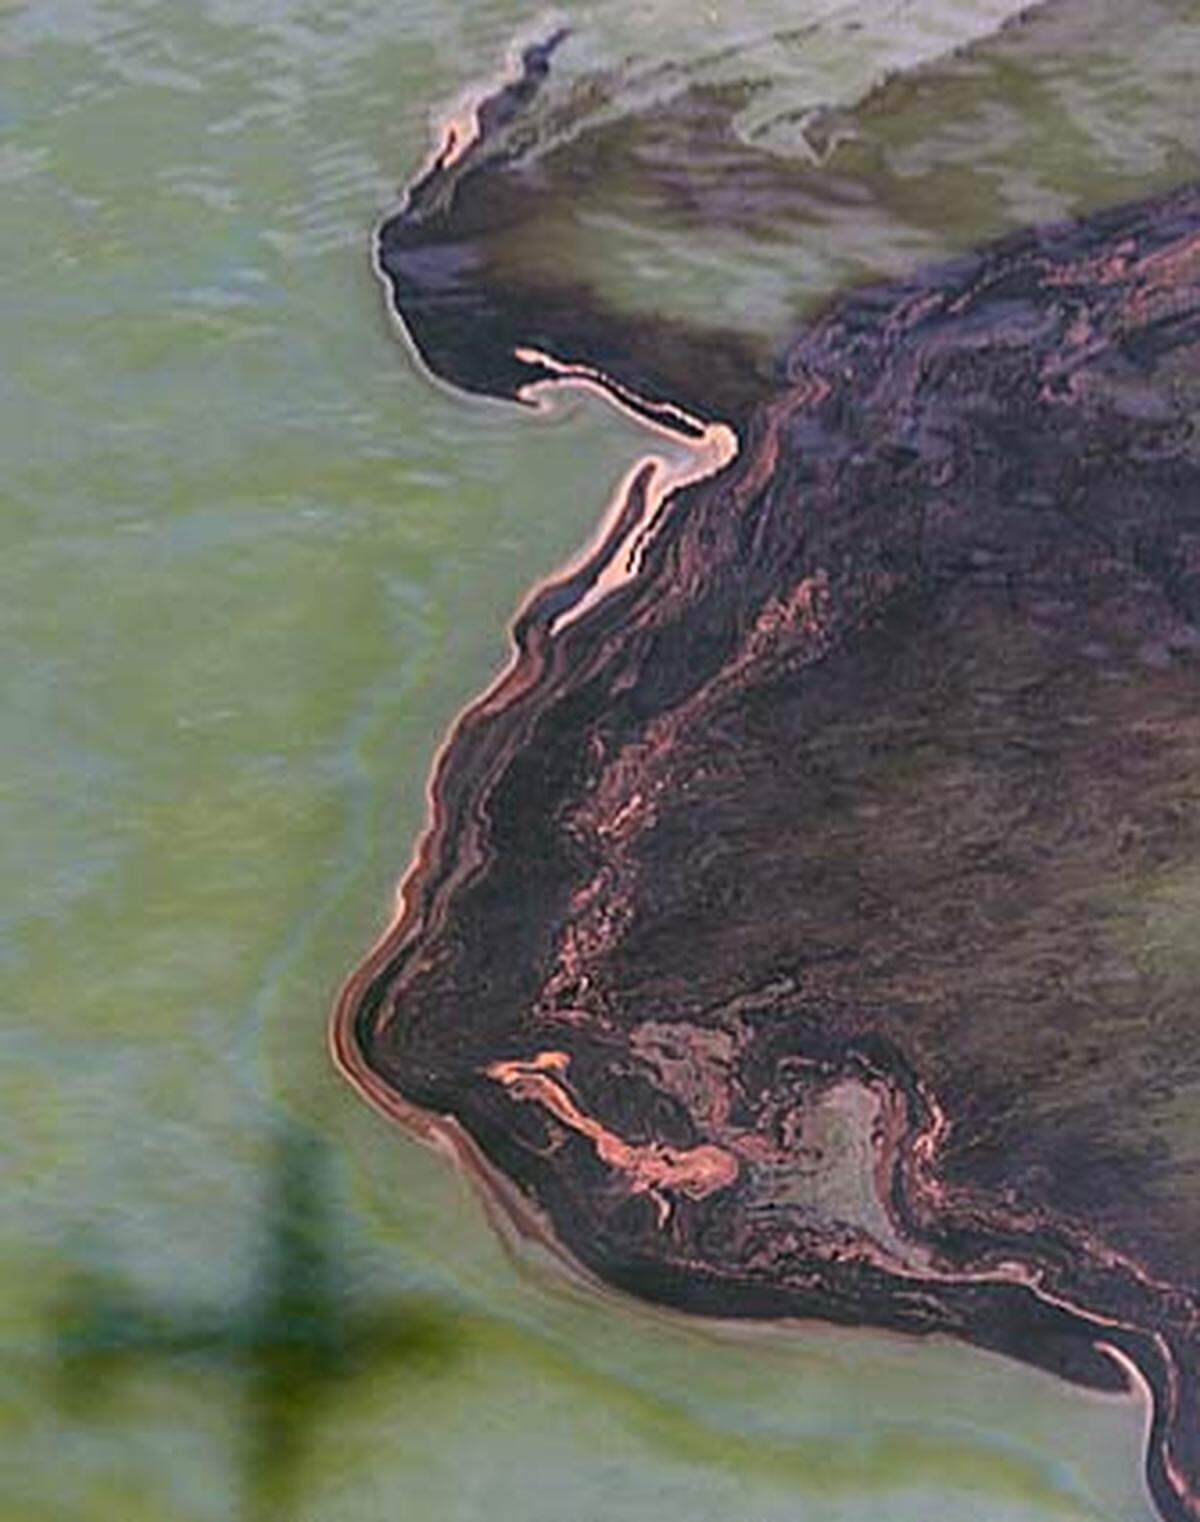 Wegen technischer Probleme muss BP das Auffangen des Öls erneut unterbrechen. Zwei Helfer kommen ums Leben.